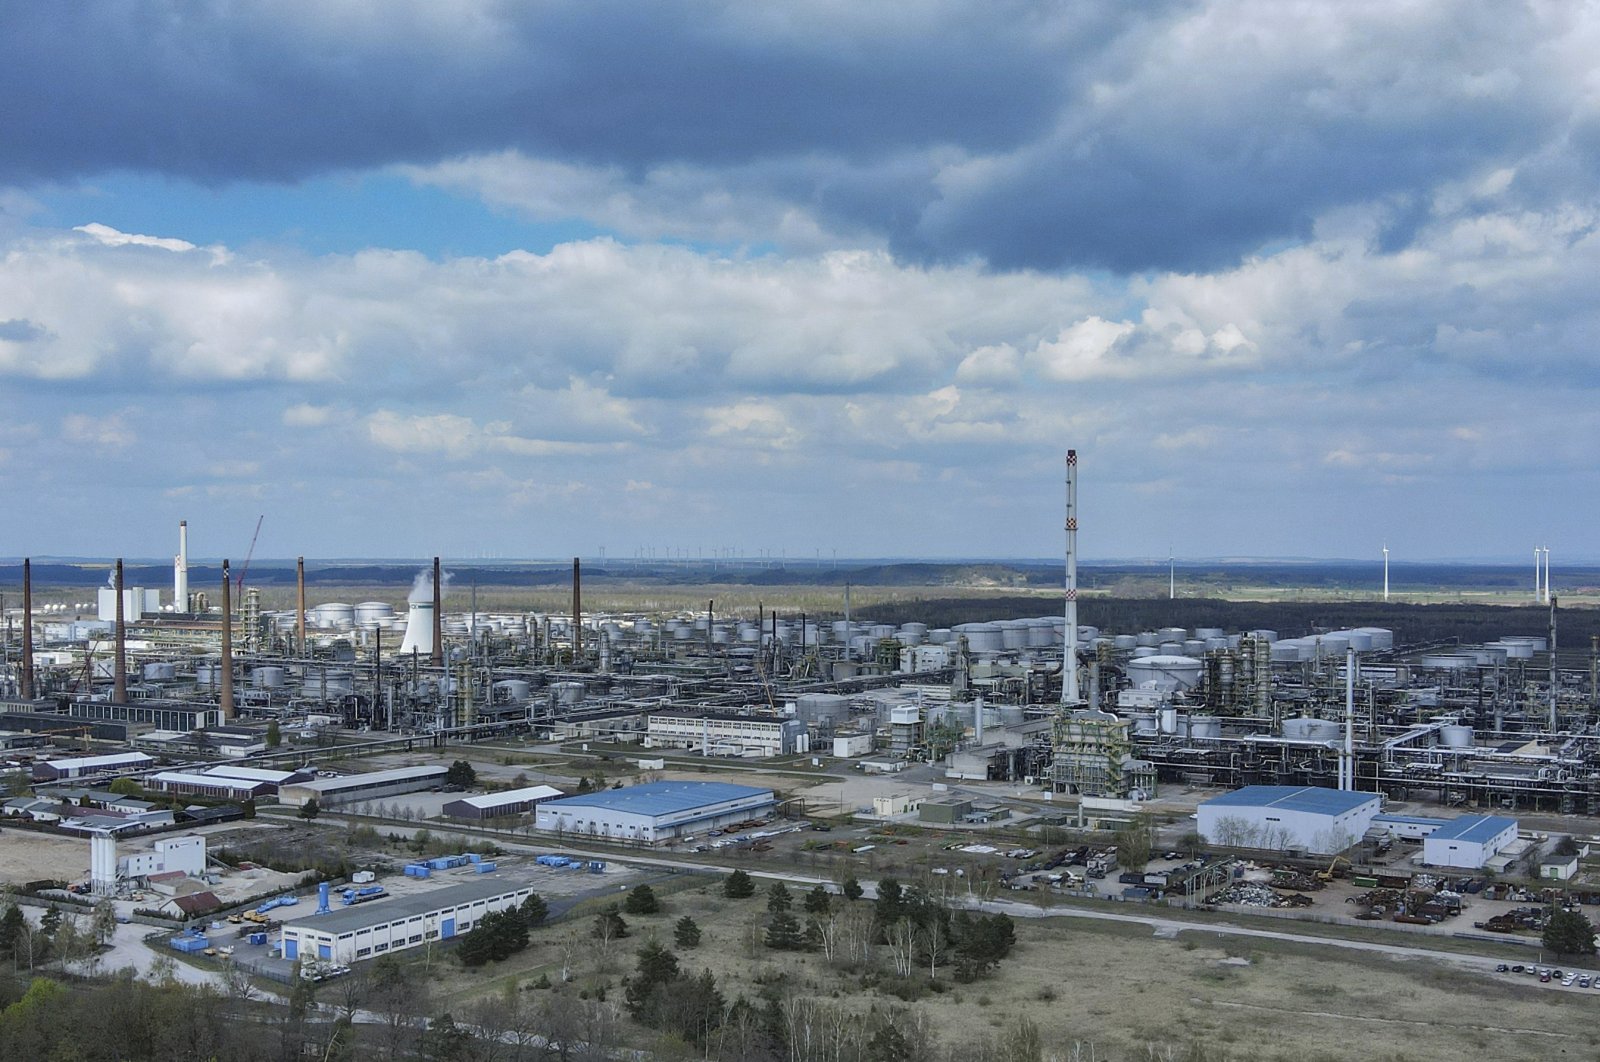 Pemerintah Jerman dikatakan akan mempercepat persetujuan terminal LNG